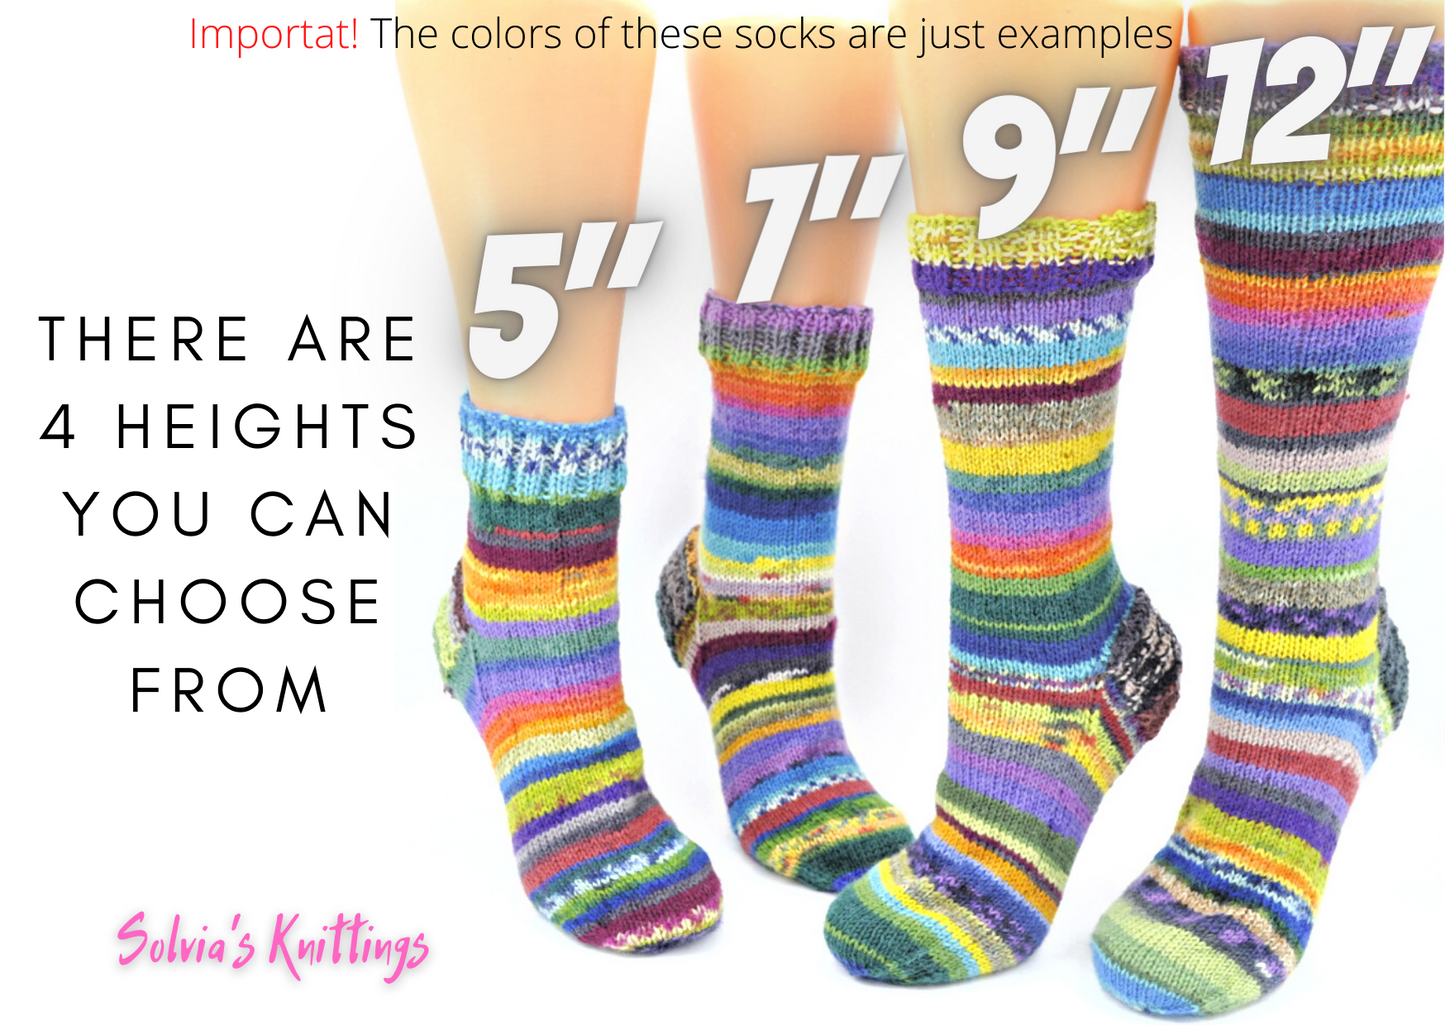 Tropical Rainbow Unisex Wool socks